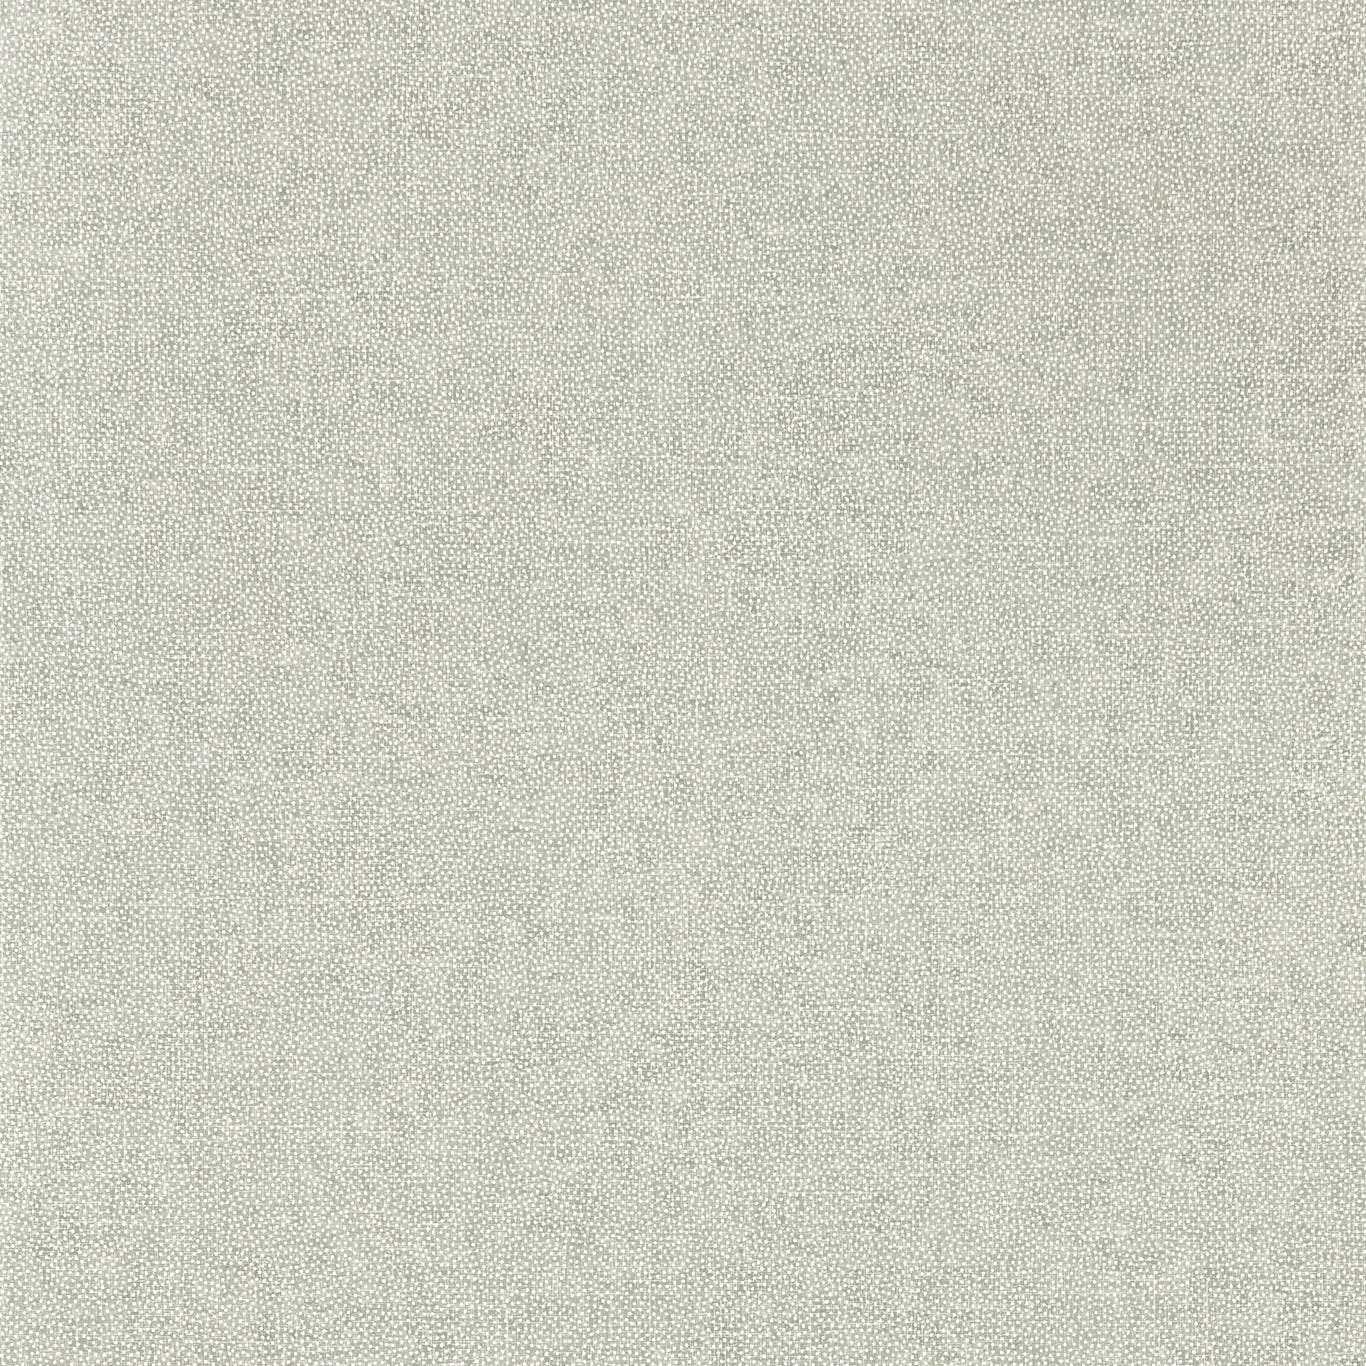 Aboretum Wallpaper Sessile Plain - Crockers Paint & Wallpaper